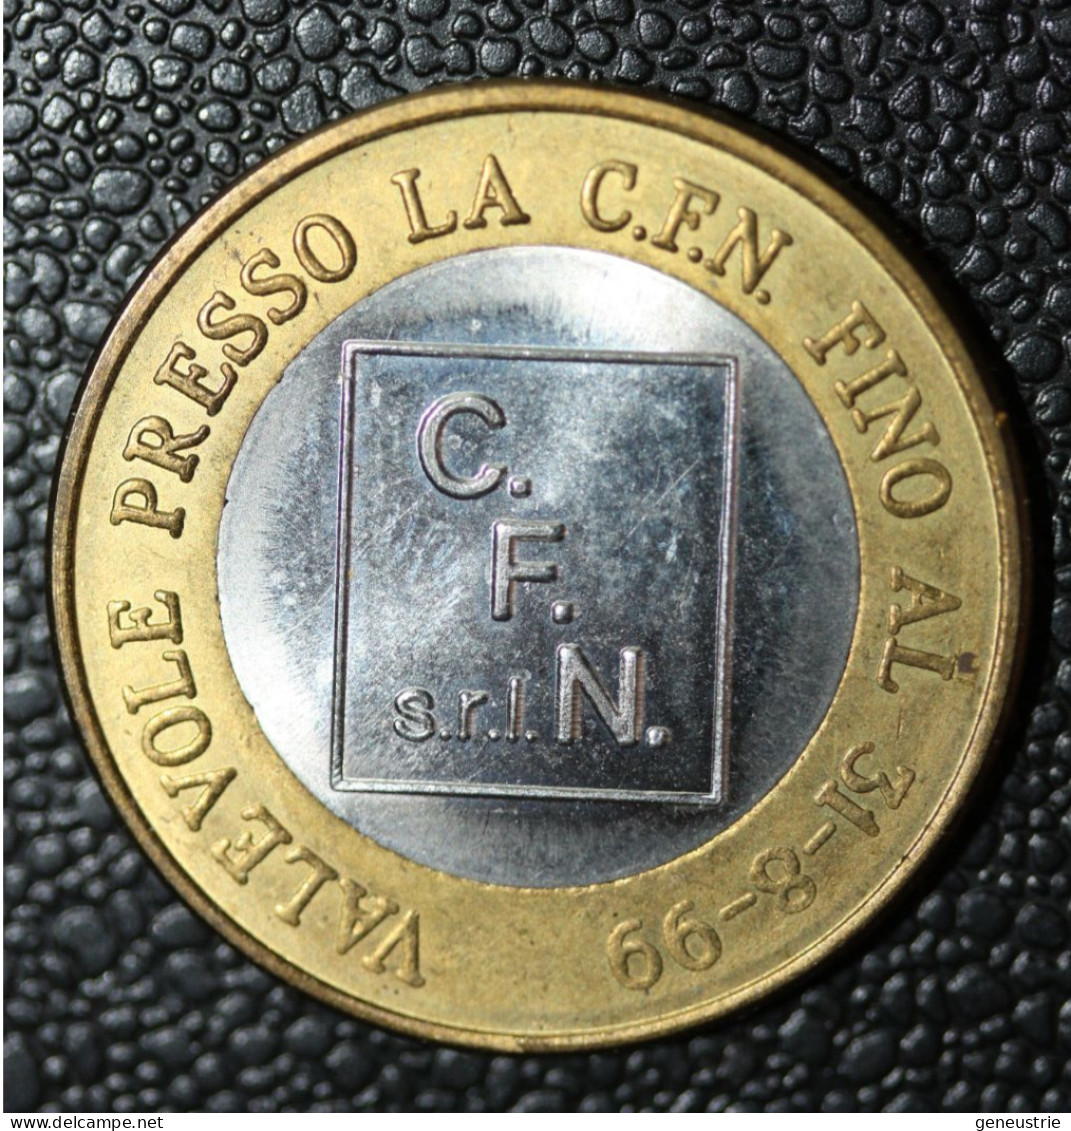 Pièce De 1 Euro Provisoire De La Société Italienne C.F.N. S.r.l. Valable Jusqu'au 31-08-1999" - Italy